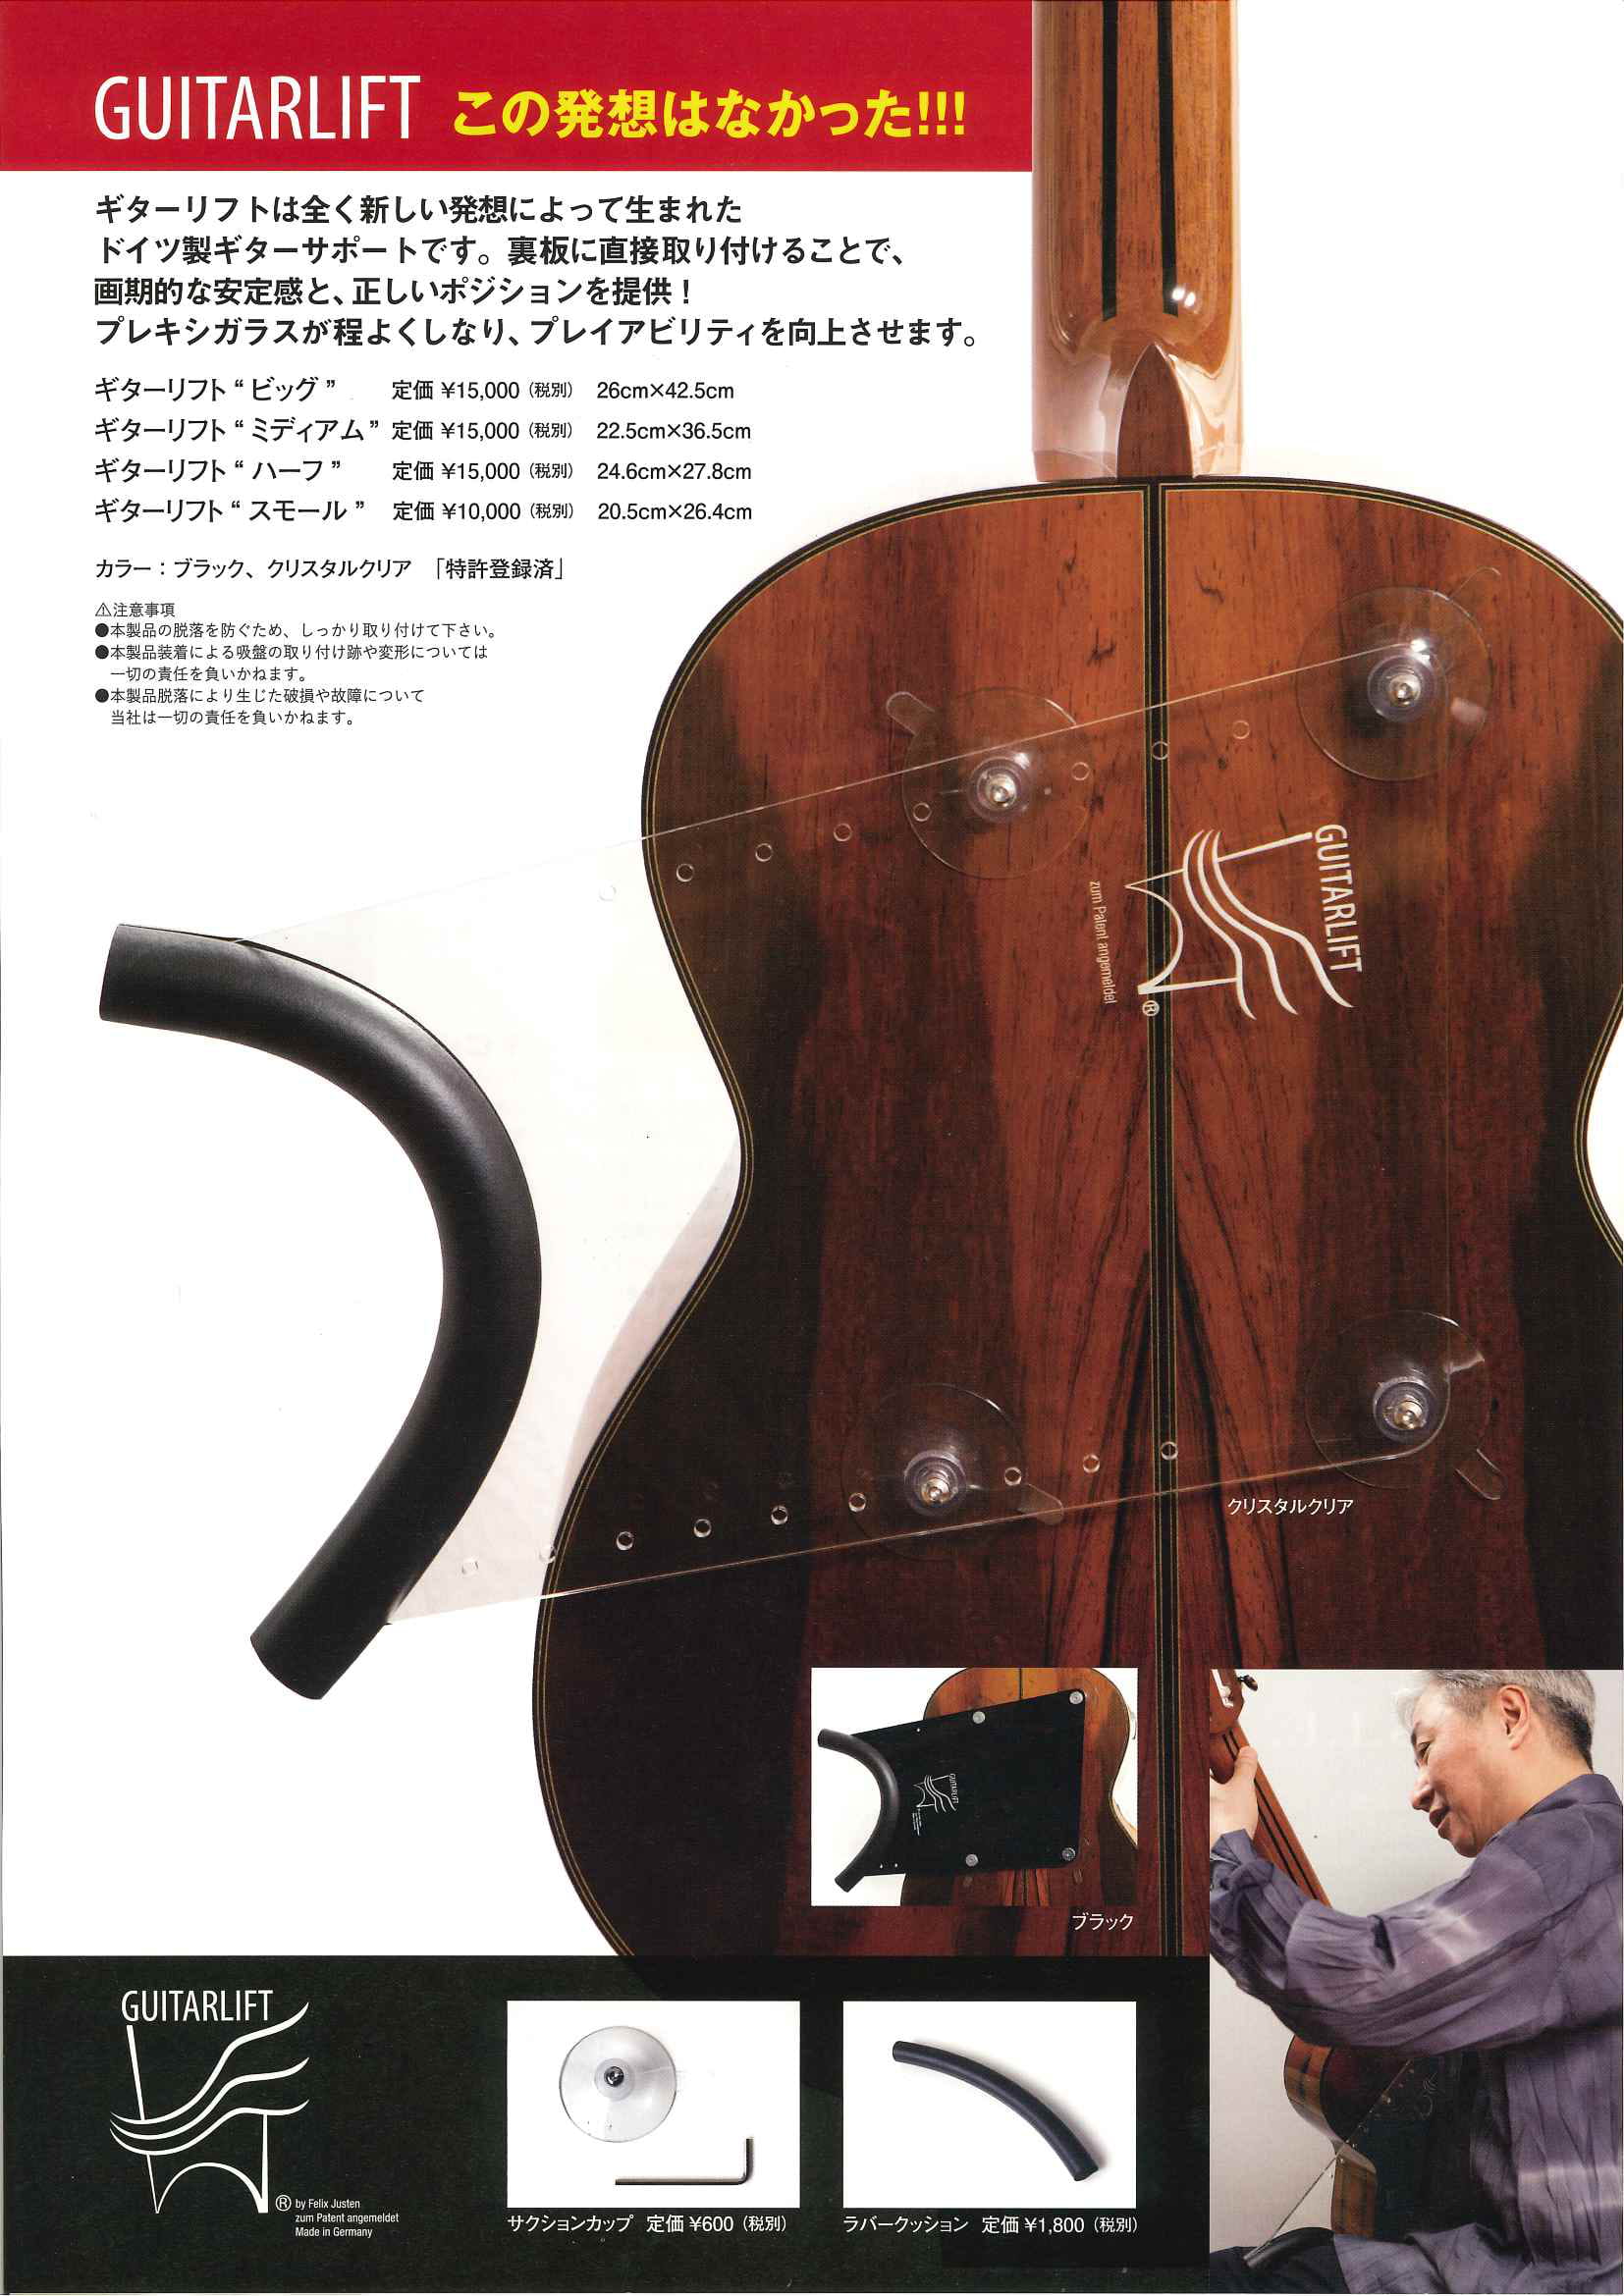 [https://www.shimamura.co.jp/shop/maebashi/guitar-bass-ukulele/20201031/4056:title=] みなさんこんにちは！ 島村楽器けやきウォーク前橋店クラッシックギター担当の西田です。 ギターを弾いていて、 「腰が痛くなって辛い… […]